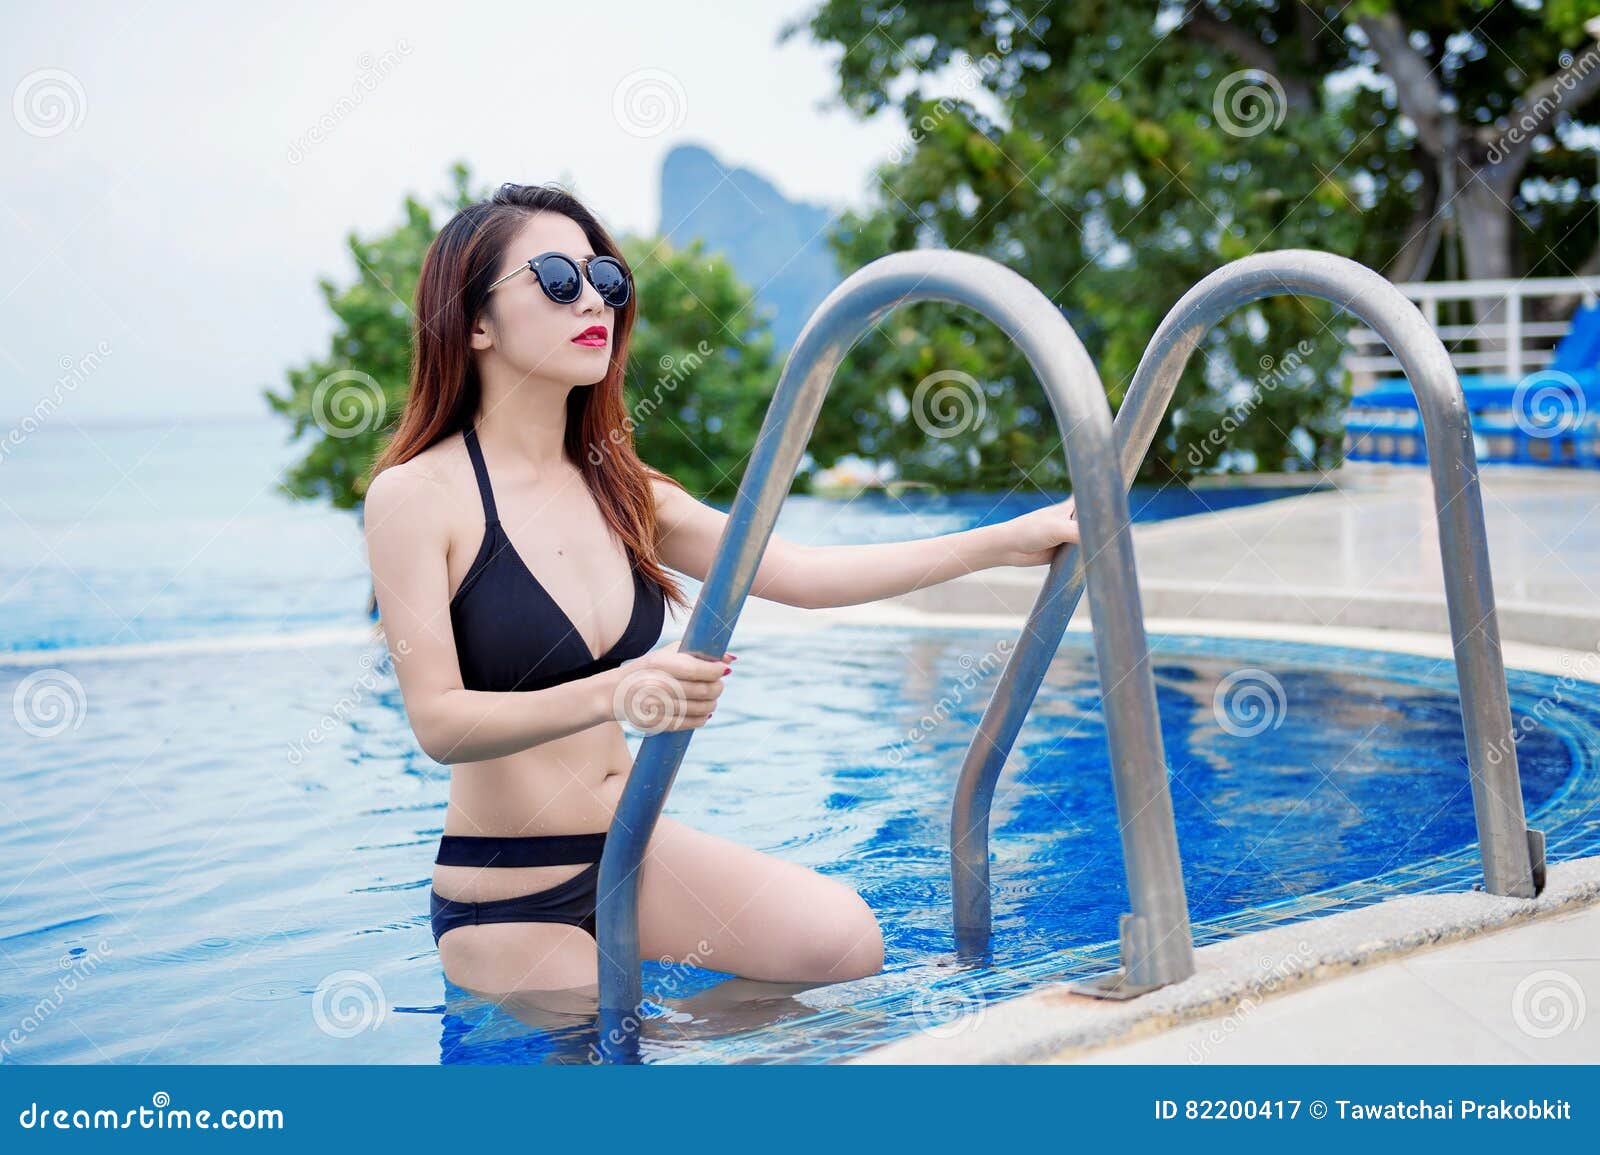 girl in bikini by indoor pool sex scene